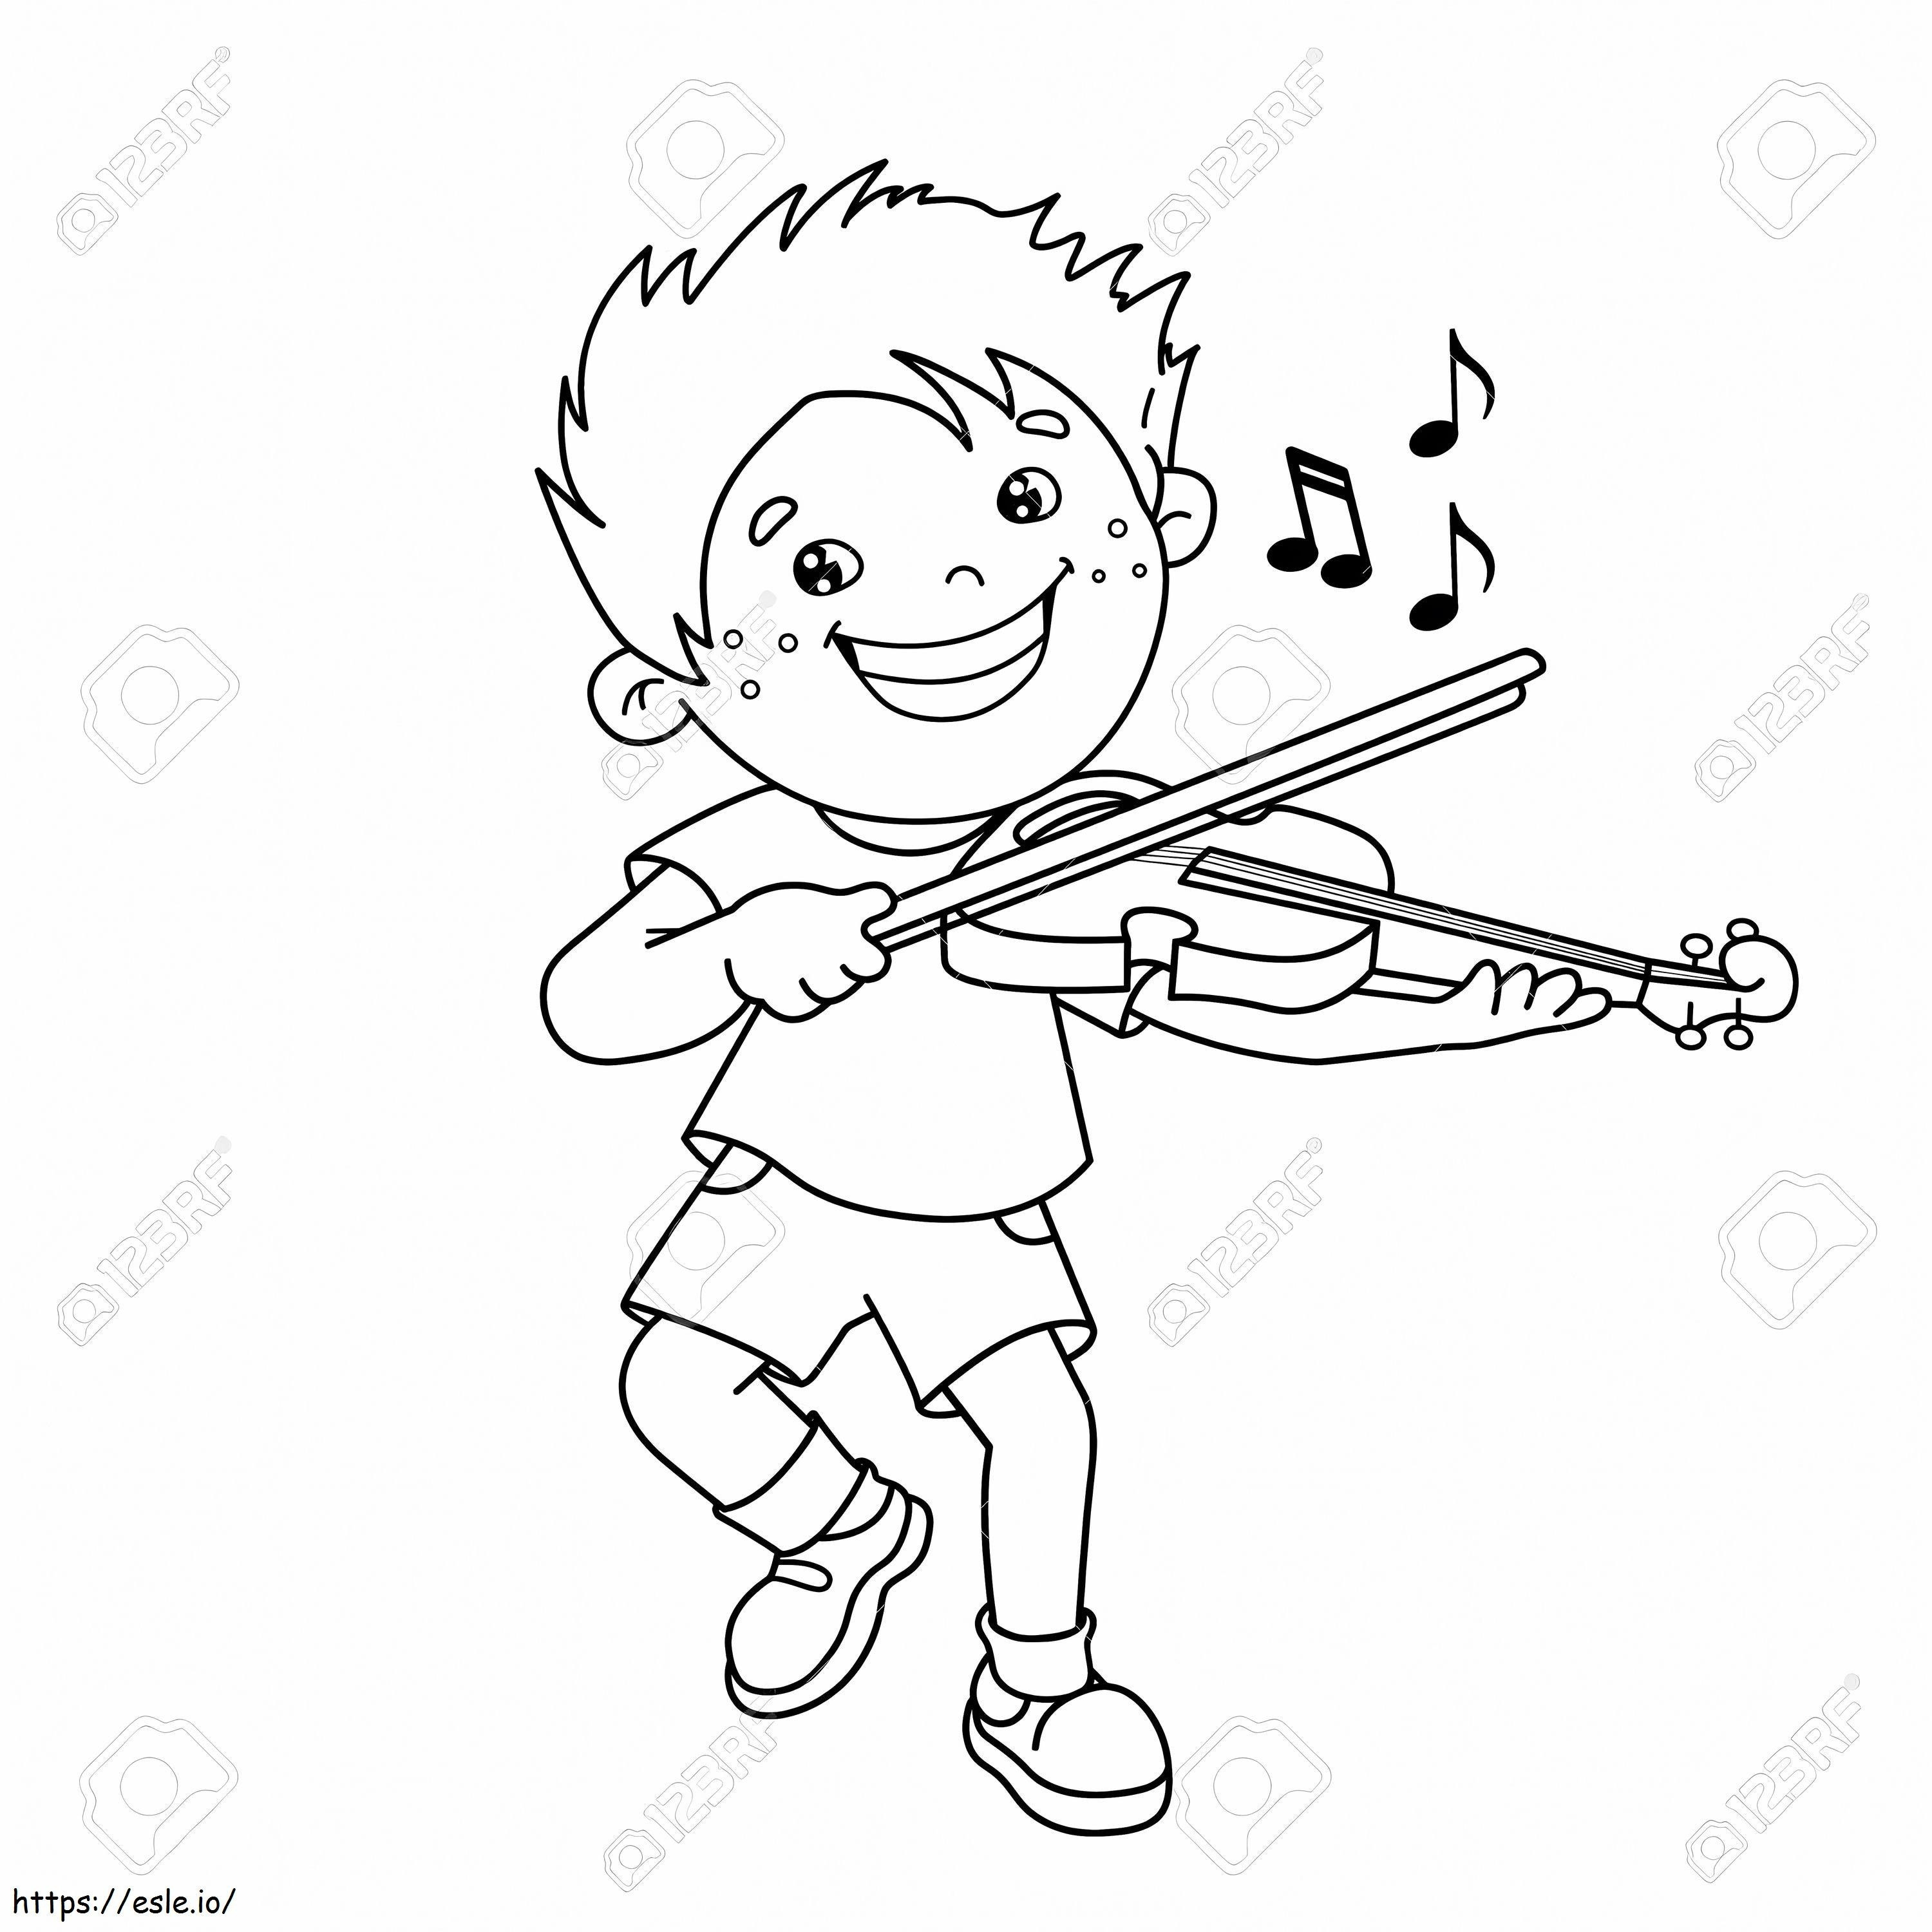 Coloriage 1543026113 75069501 contour d'un garçon de dessin animé jouant du violon sur des instruments de musique livre de coloriage pour à imprimer dessin